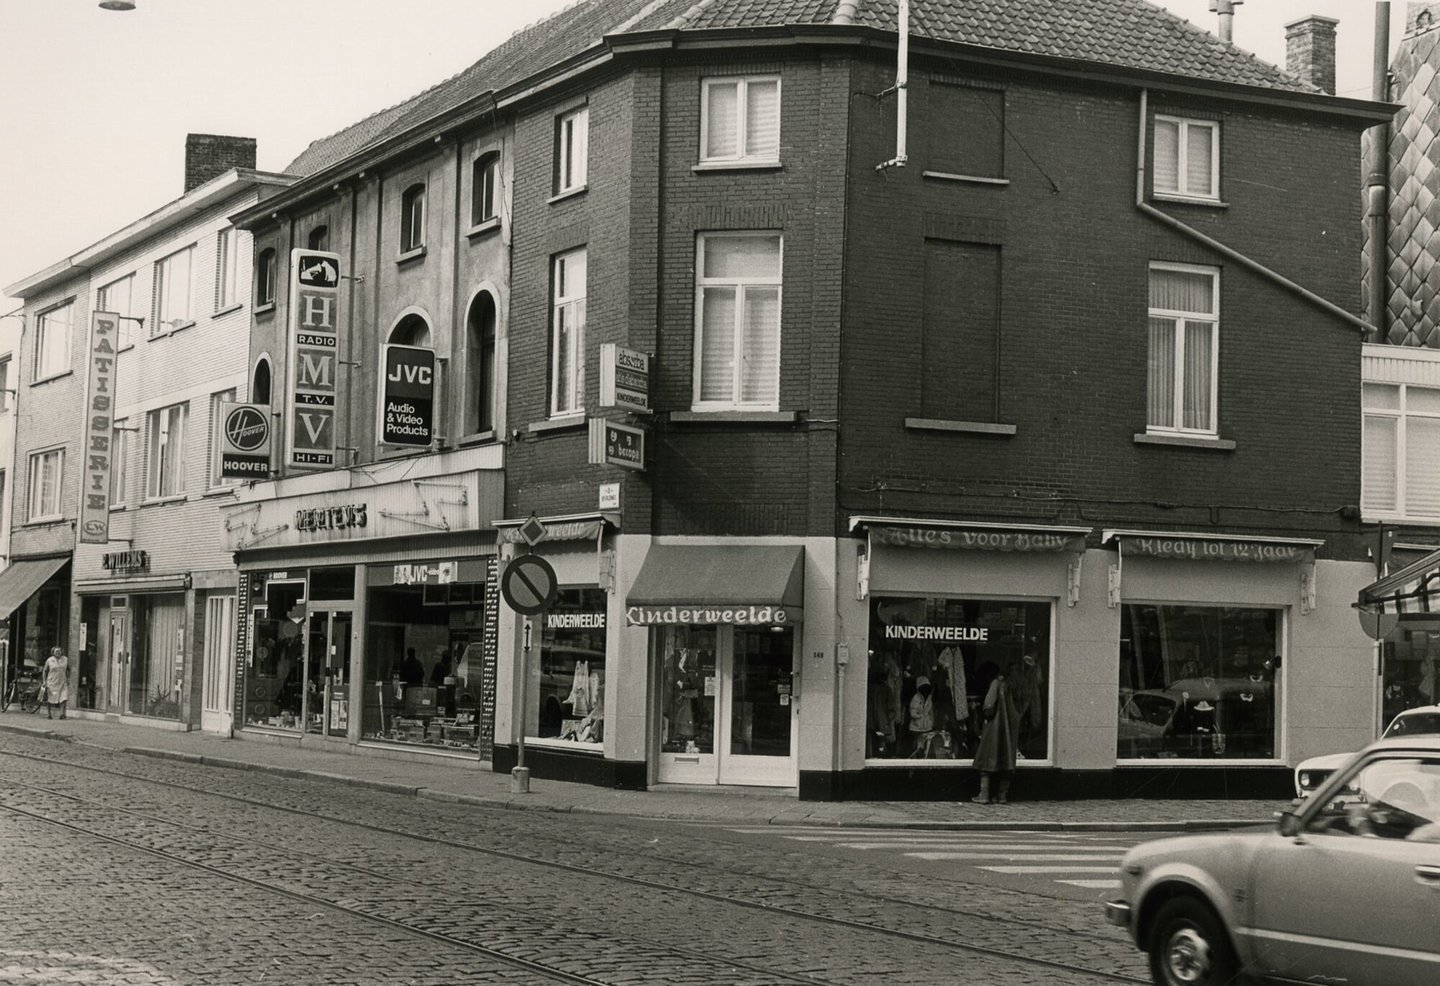 Straatbeeld met etalage van kledingwinkel Kinderweelde, elektrozaak Mertens en bakkerij Willems in Gent